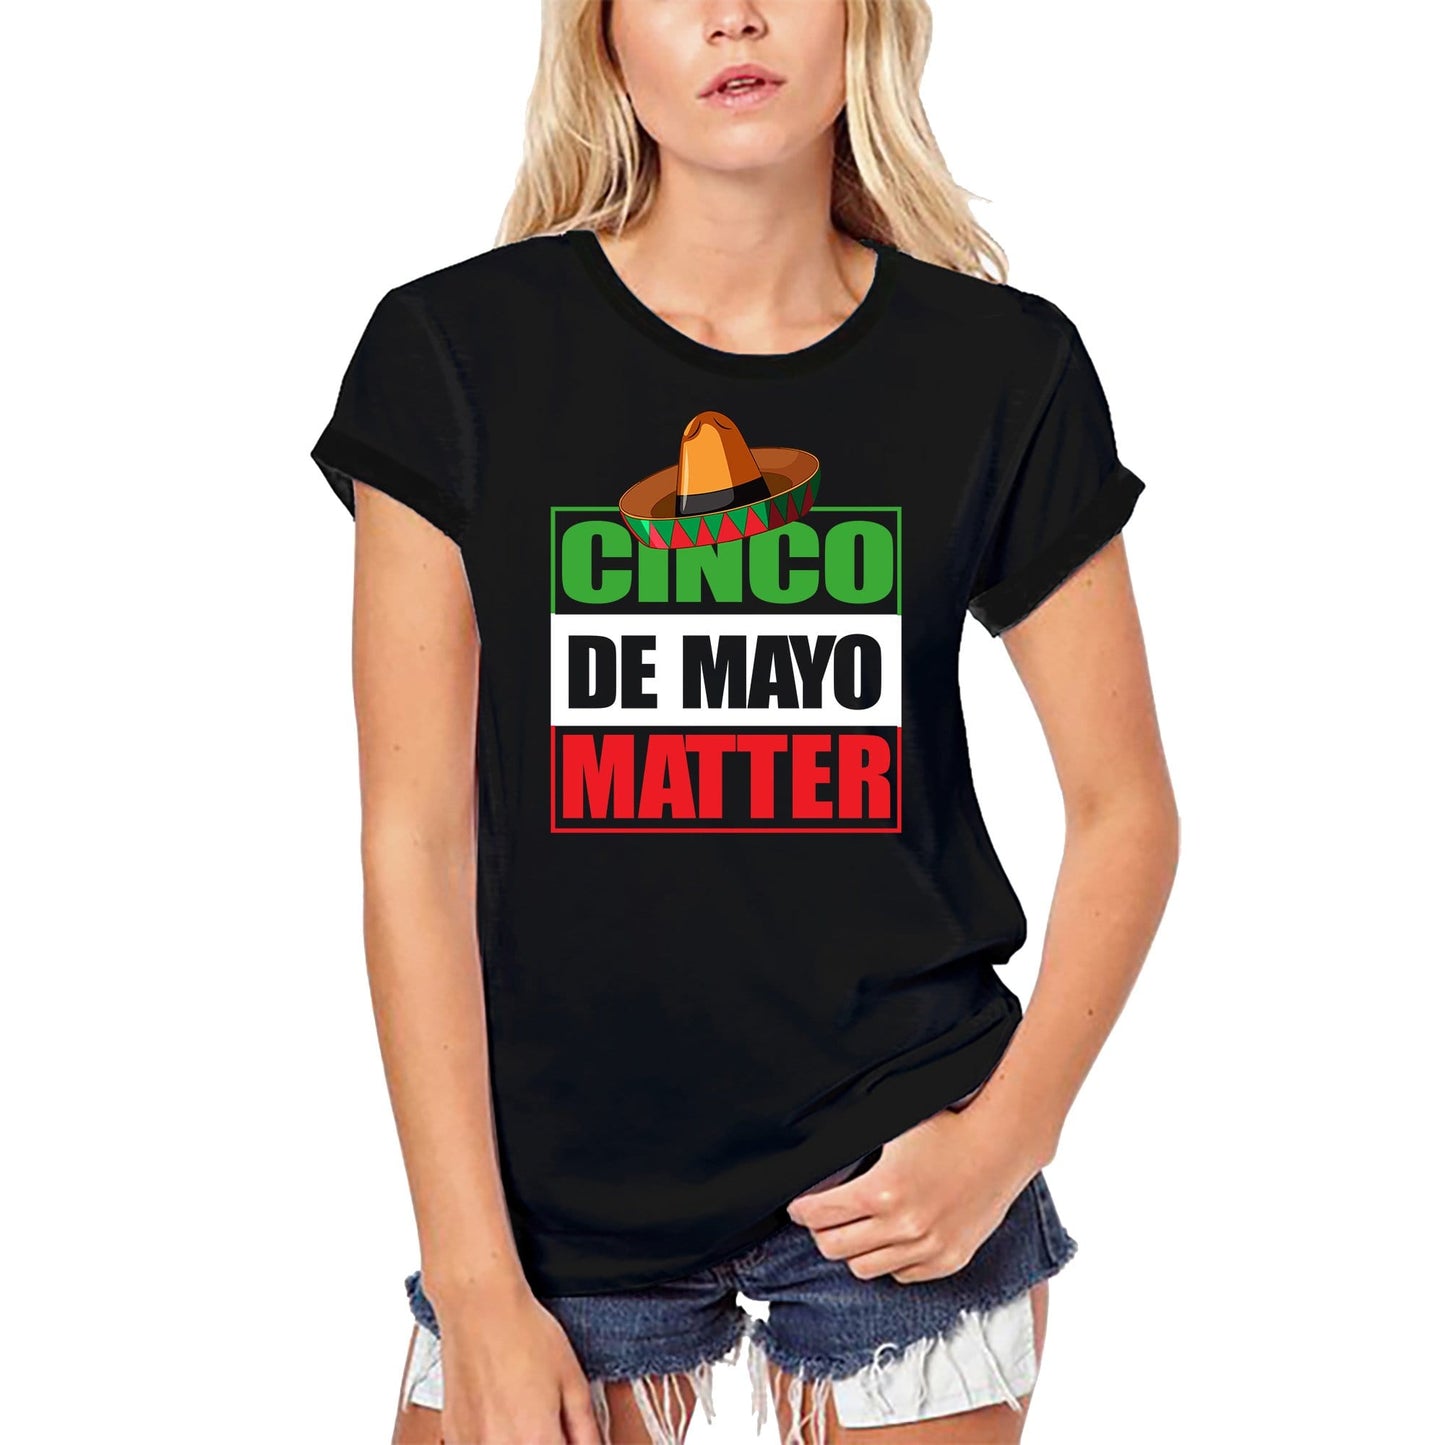 ULTRABASIC Women's Organic T-Shirt Cinco de Mayo Matter - Funny Mexican Tequila Tee Shirt